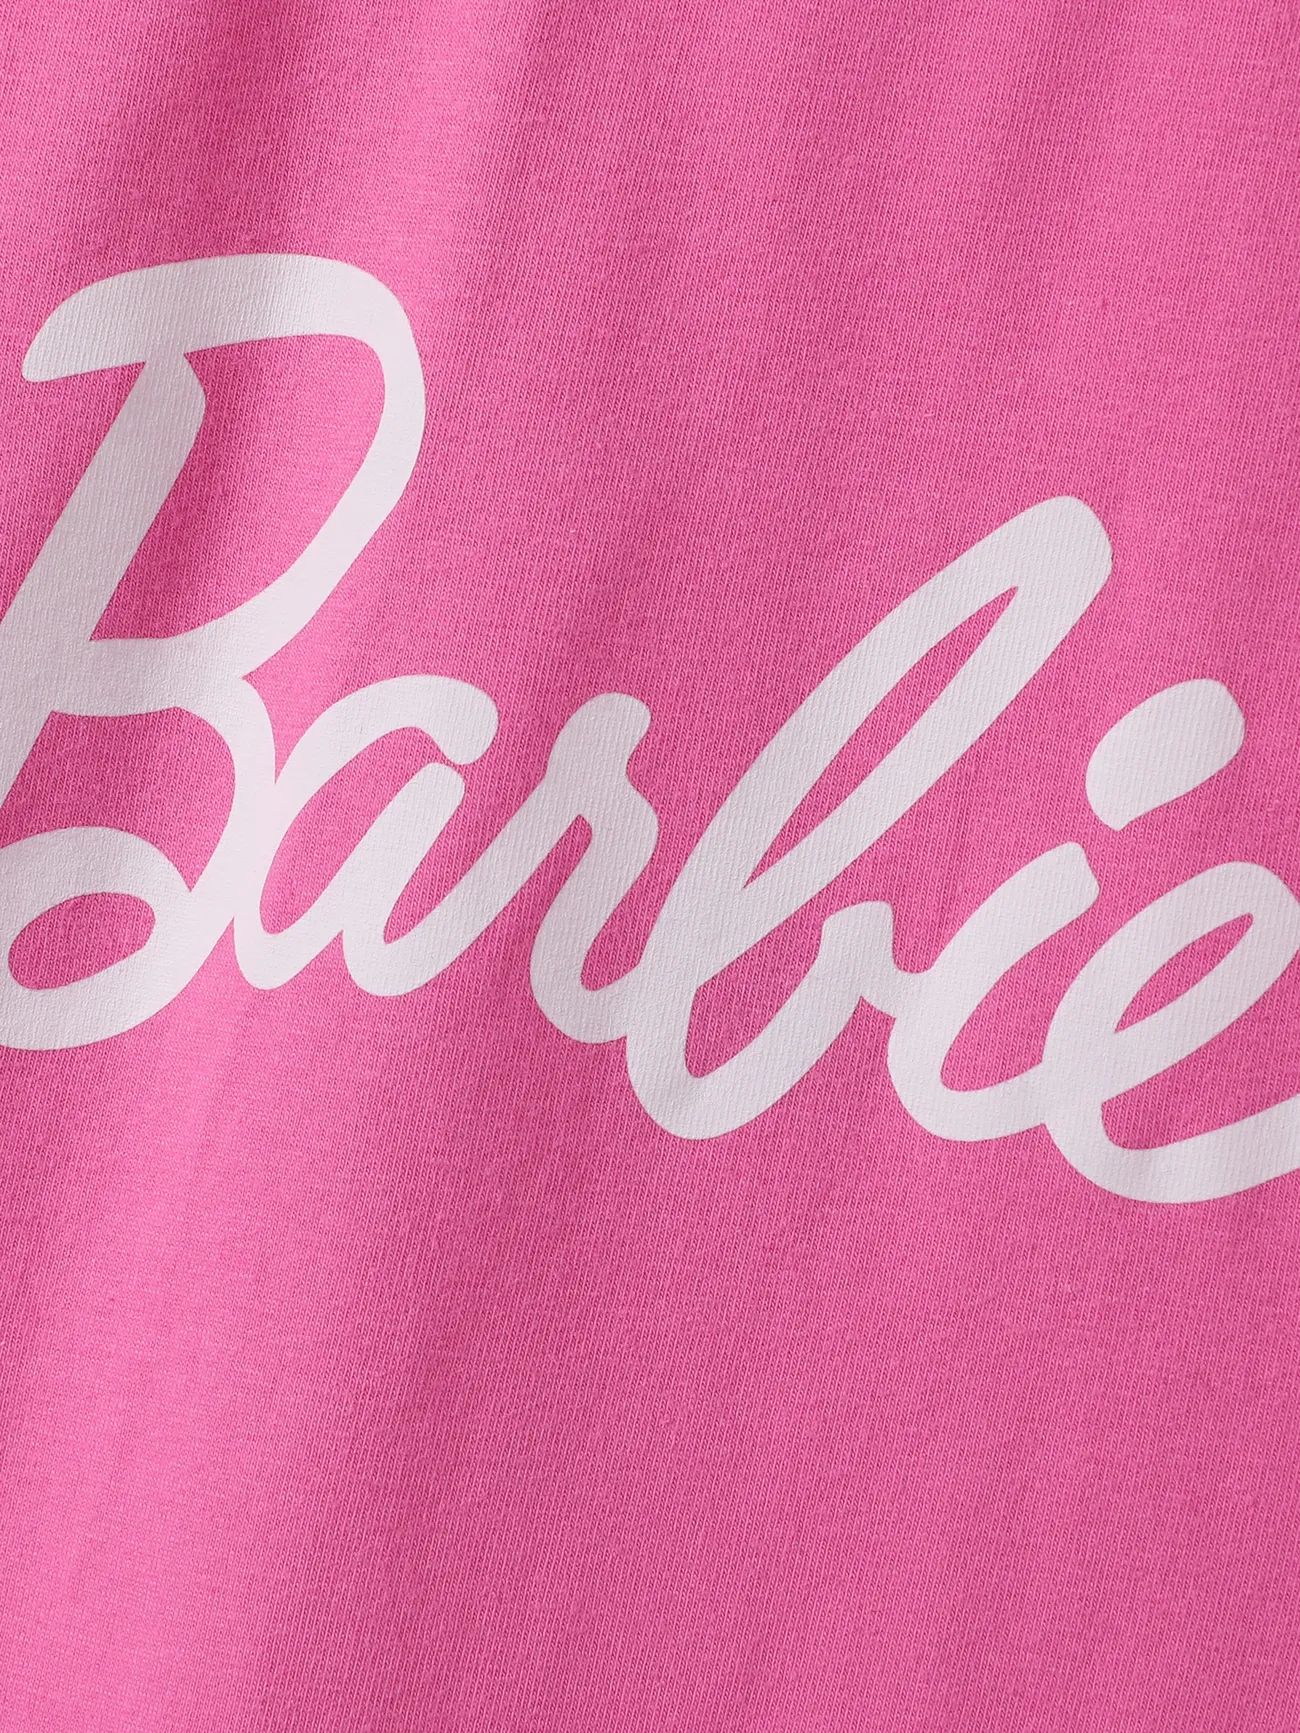 Barbie Muttertag IP Mädchen Süß Kleider roseo big image 1